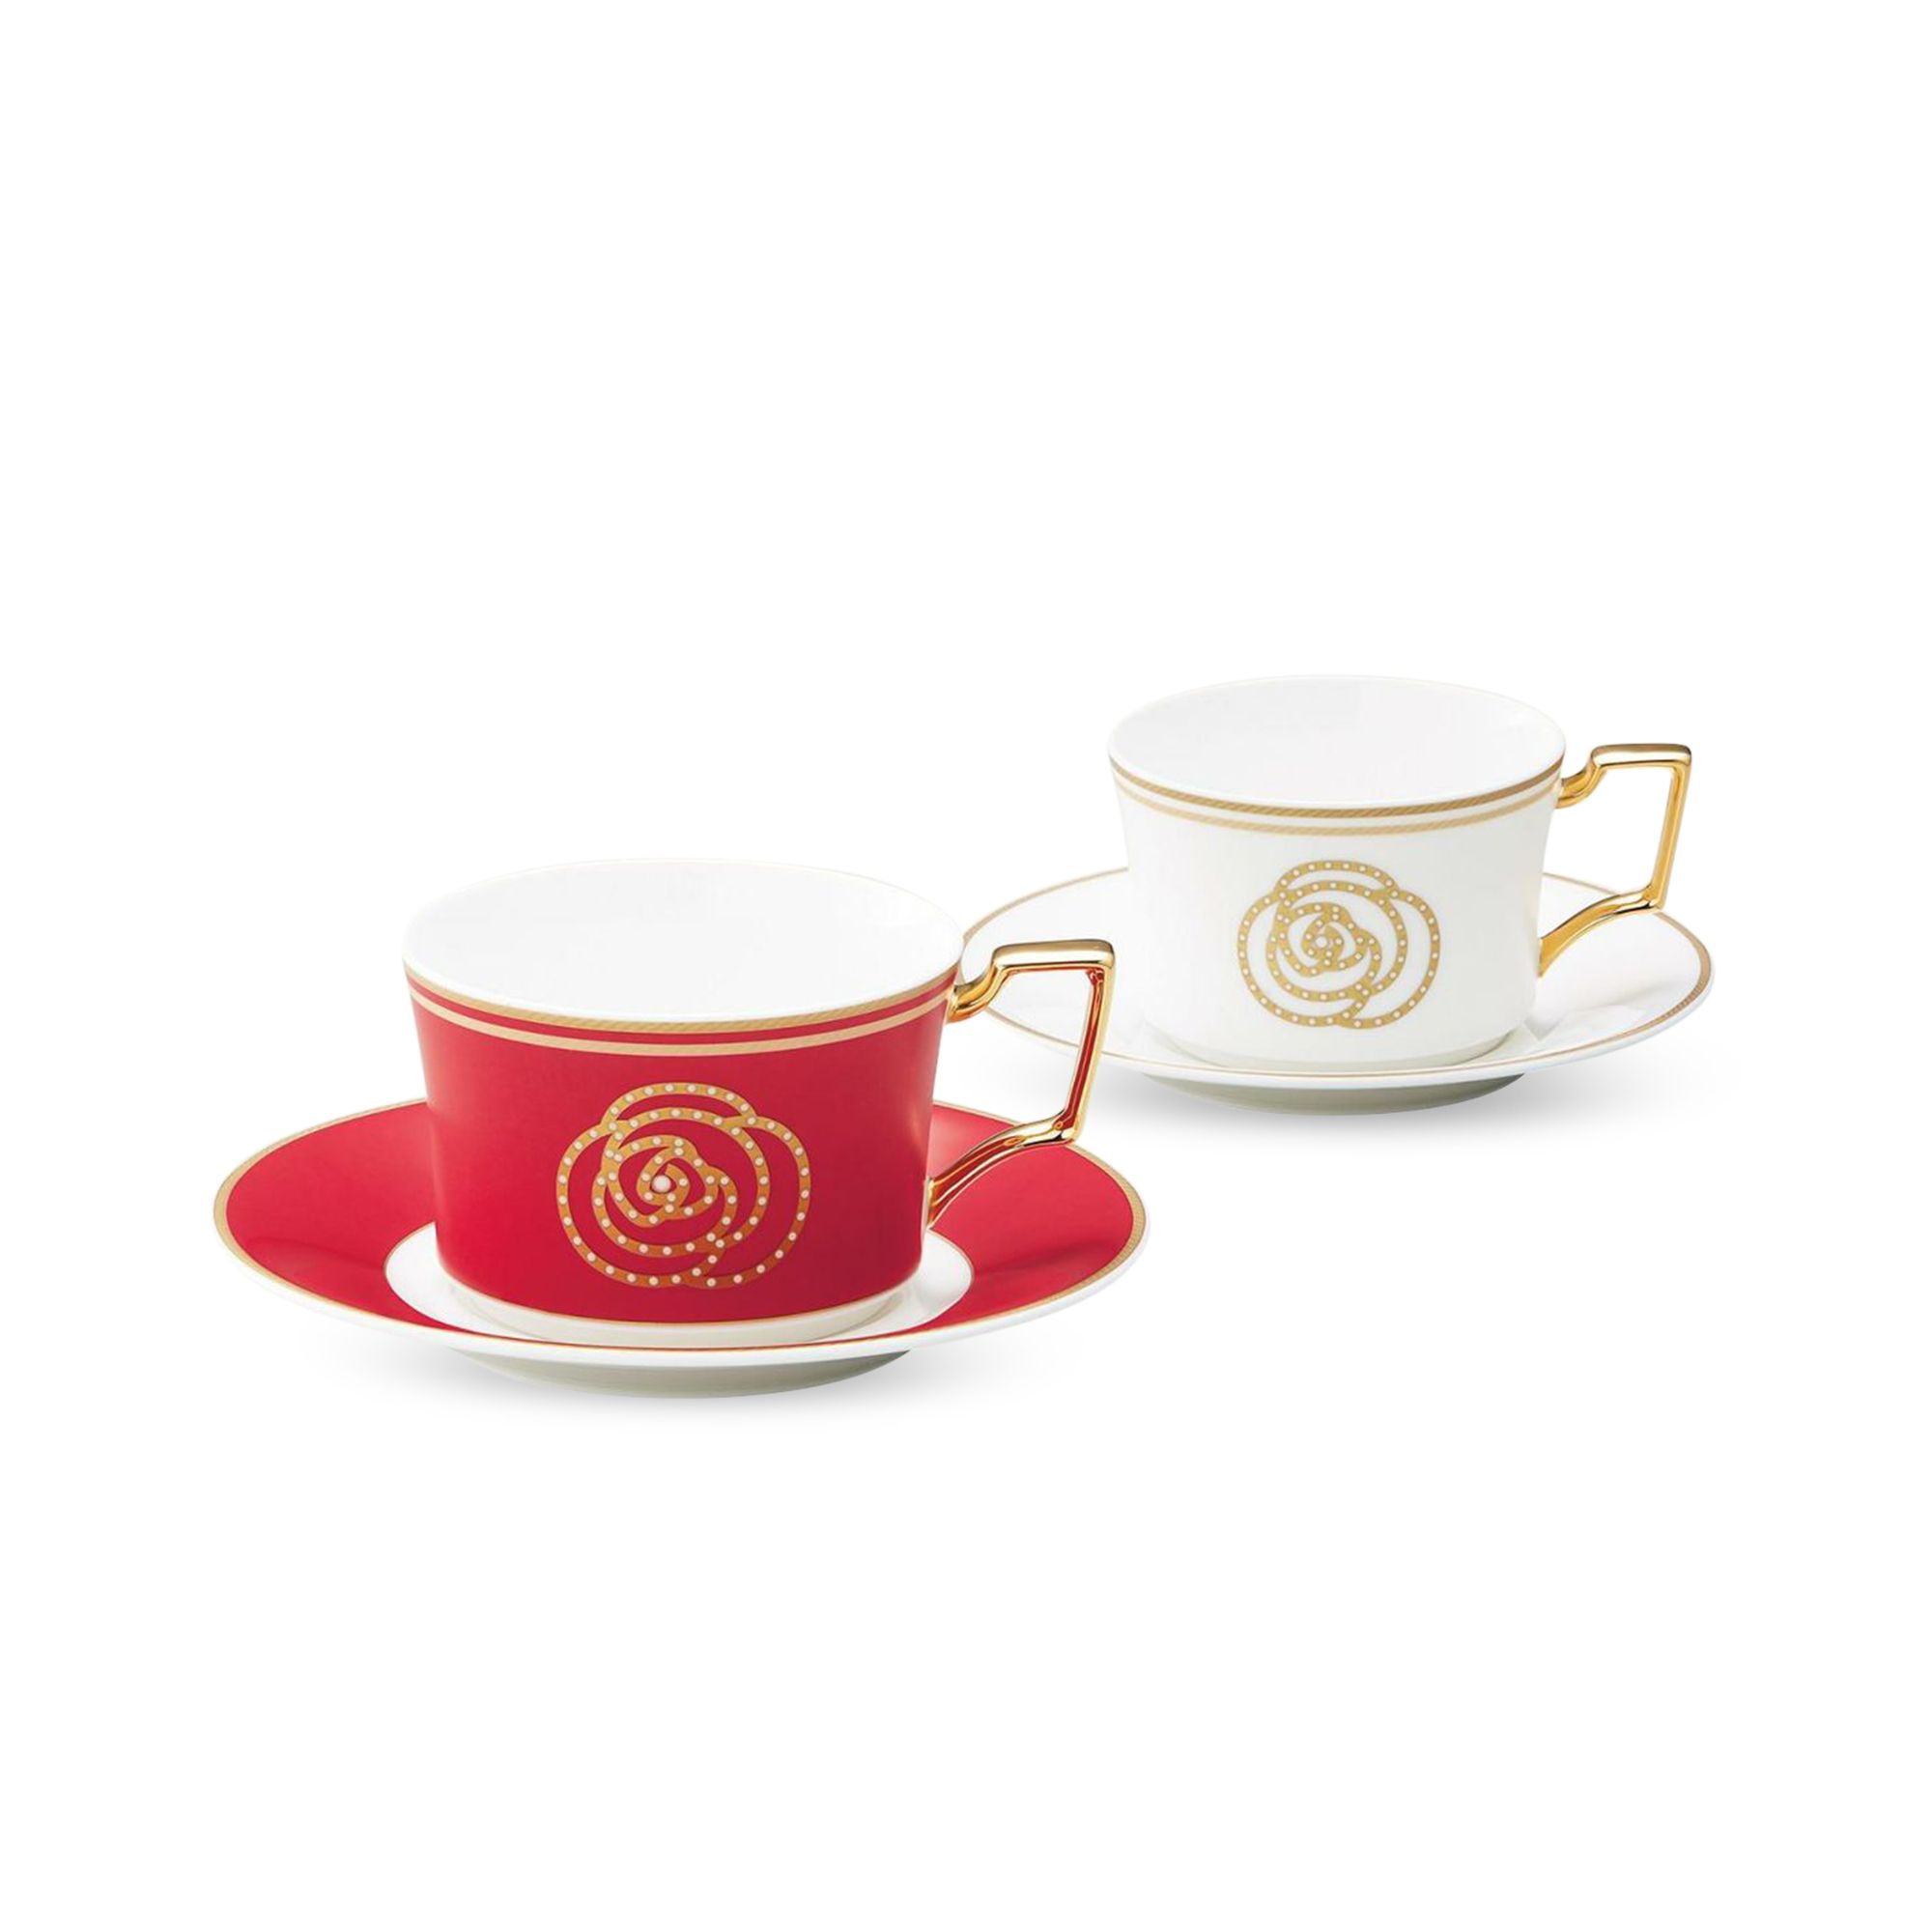  Bộ tách trà / coffee đôi ( Đỏ - Trắng ) dung tích 240ml kèm đĩa lót 